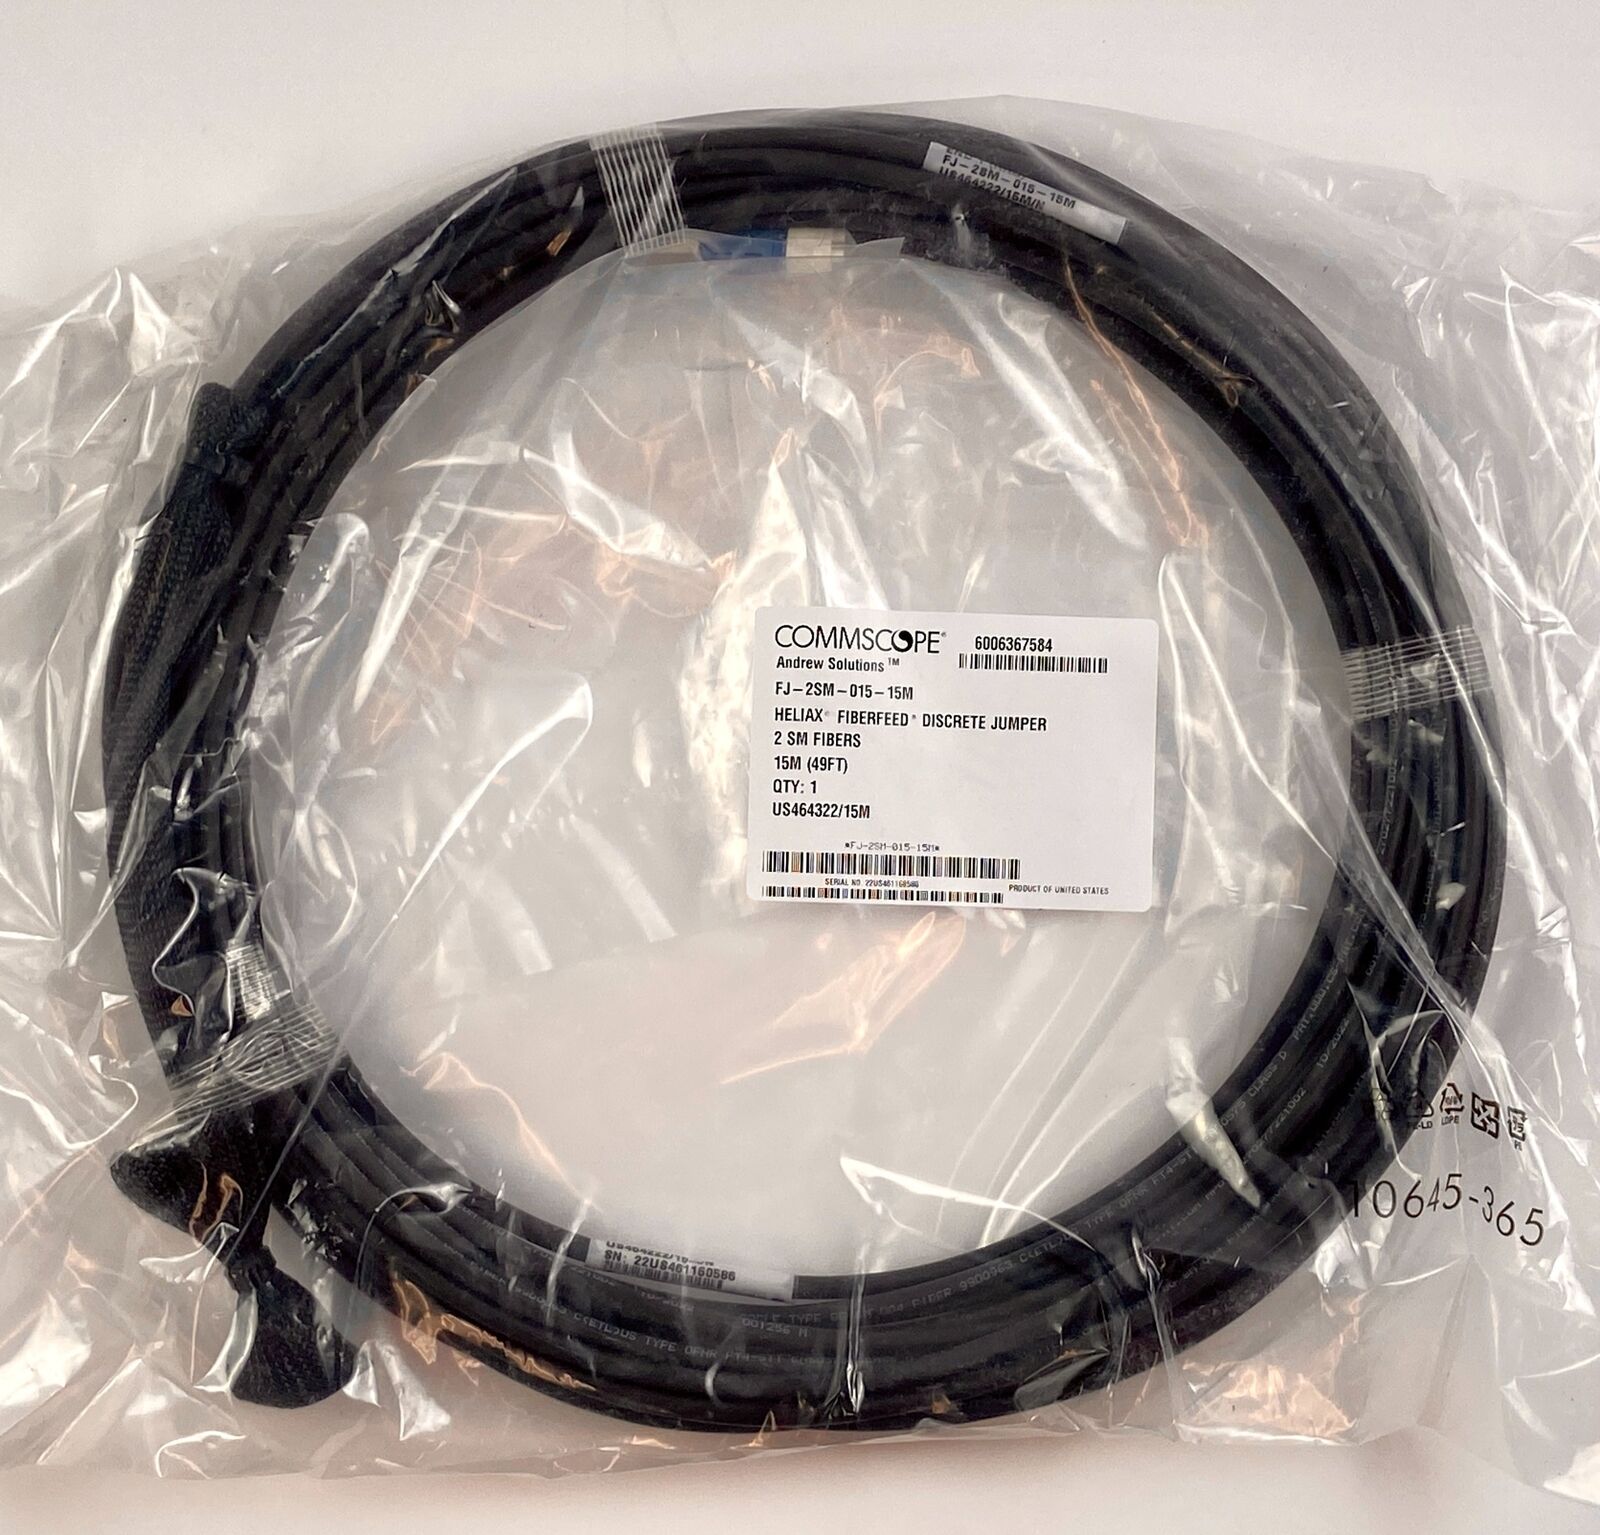 Commscope Fiber Distribution Cable Single-mode 49 ft FJ-2SM-015-15M